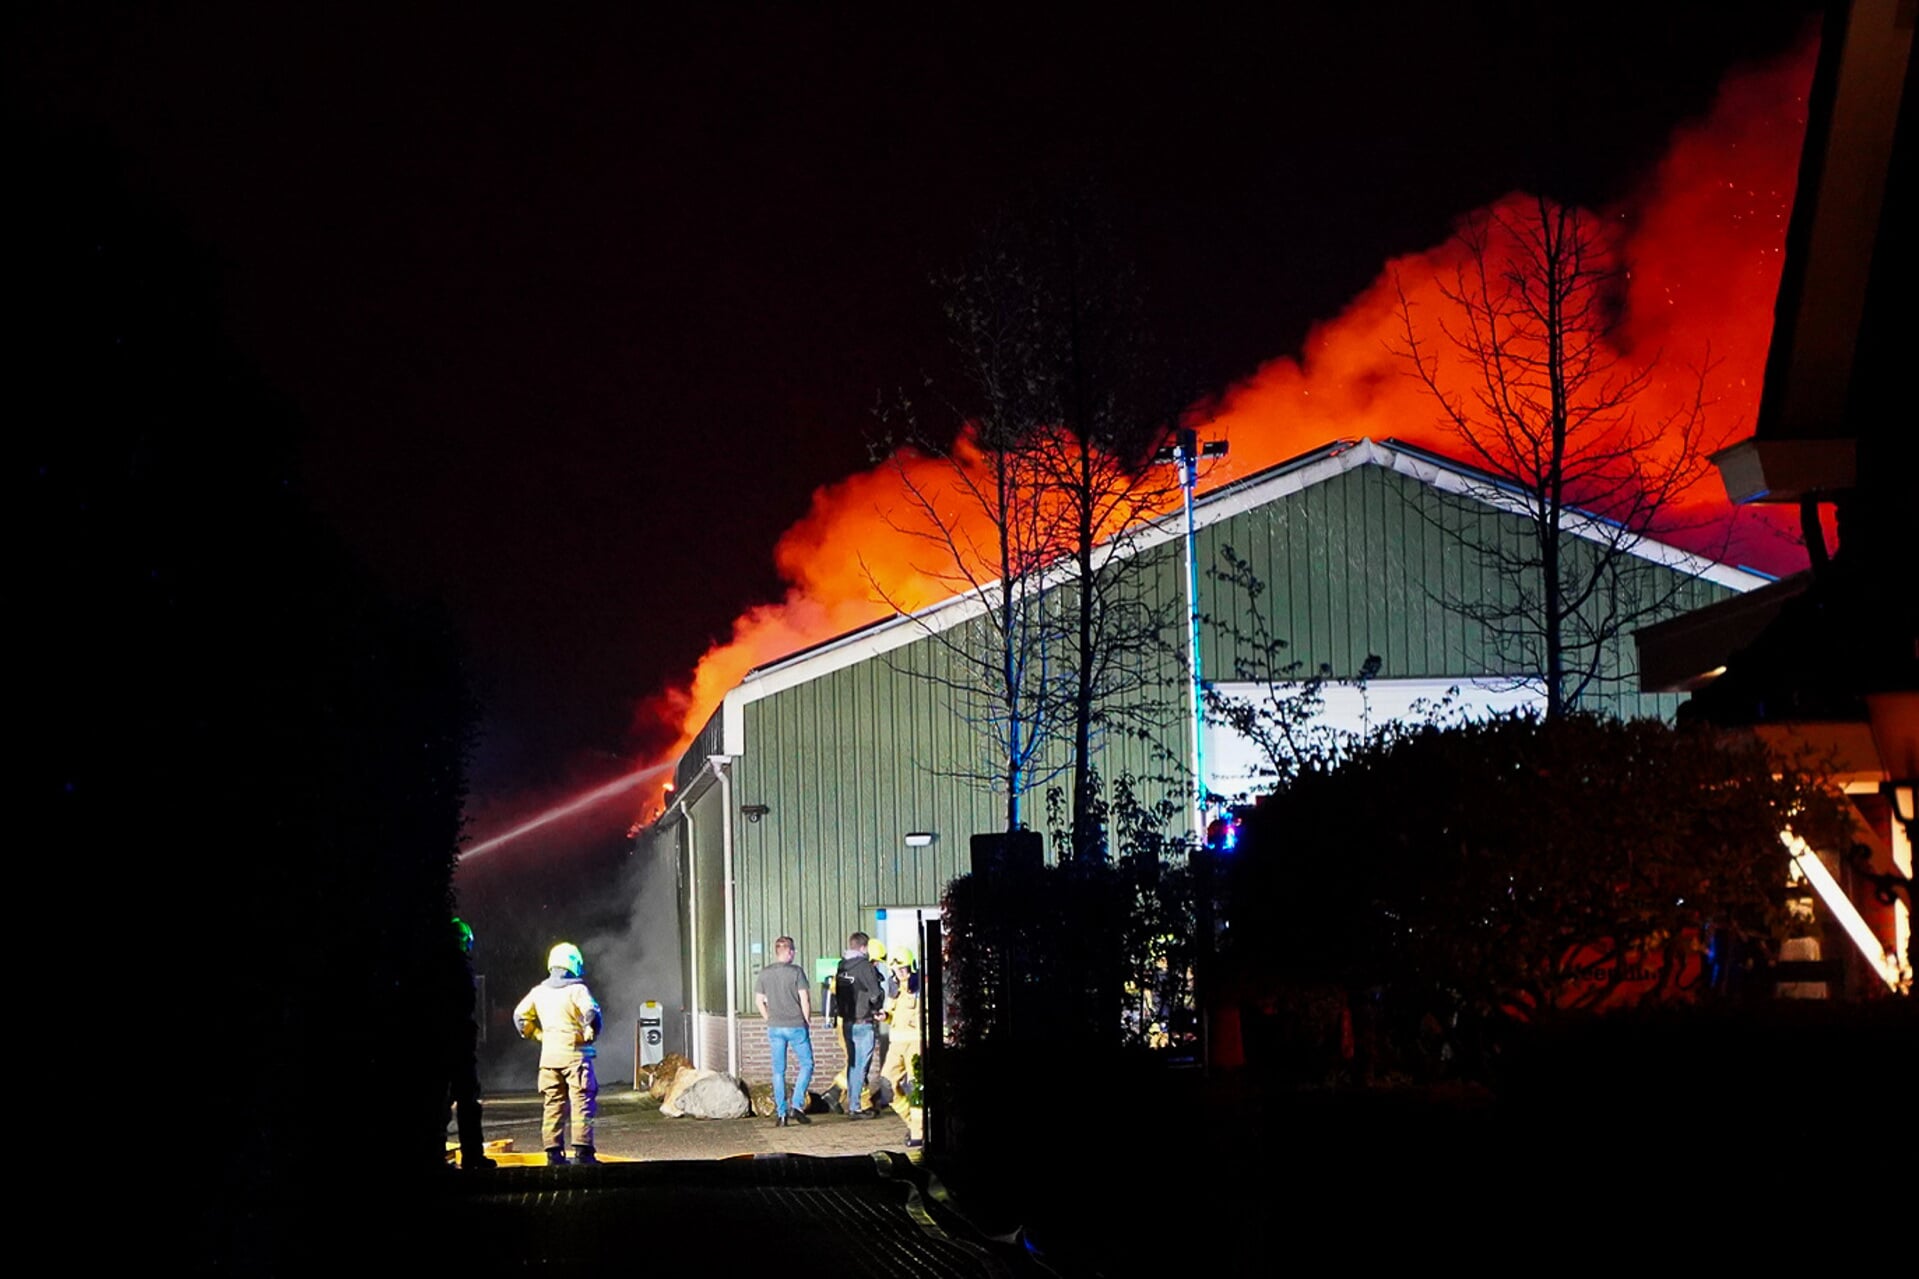 De brand in het bedrijfspand in Nijkerkerveen afgelopen dinsdagnacht